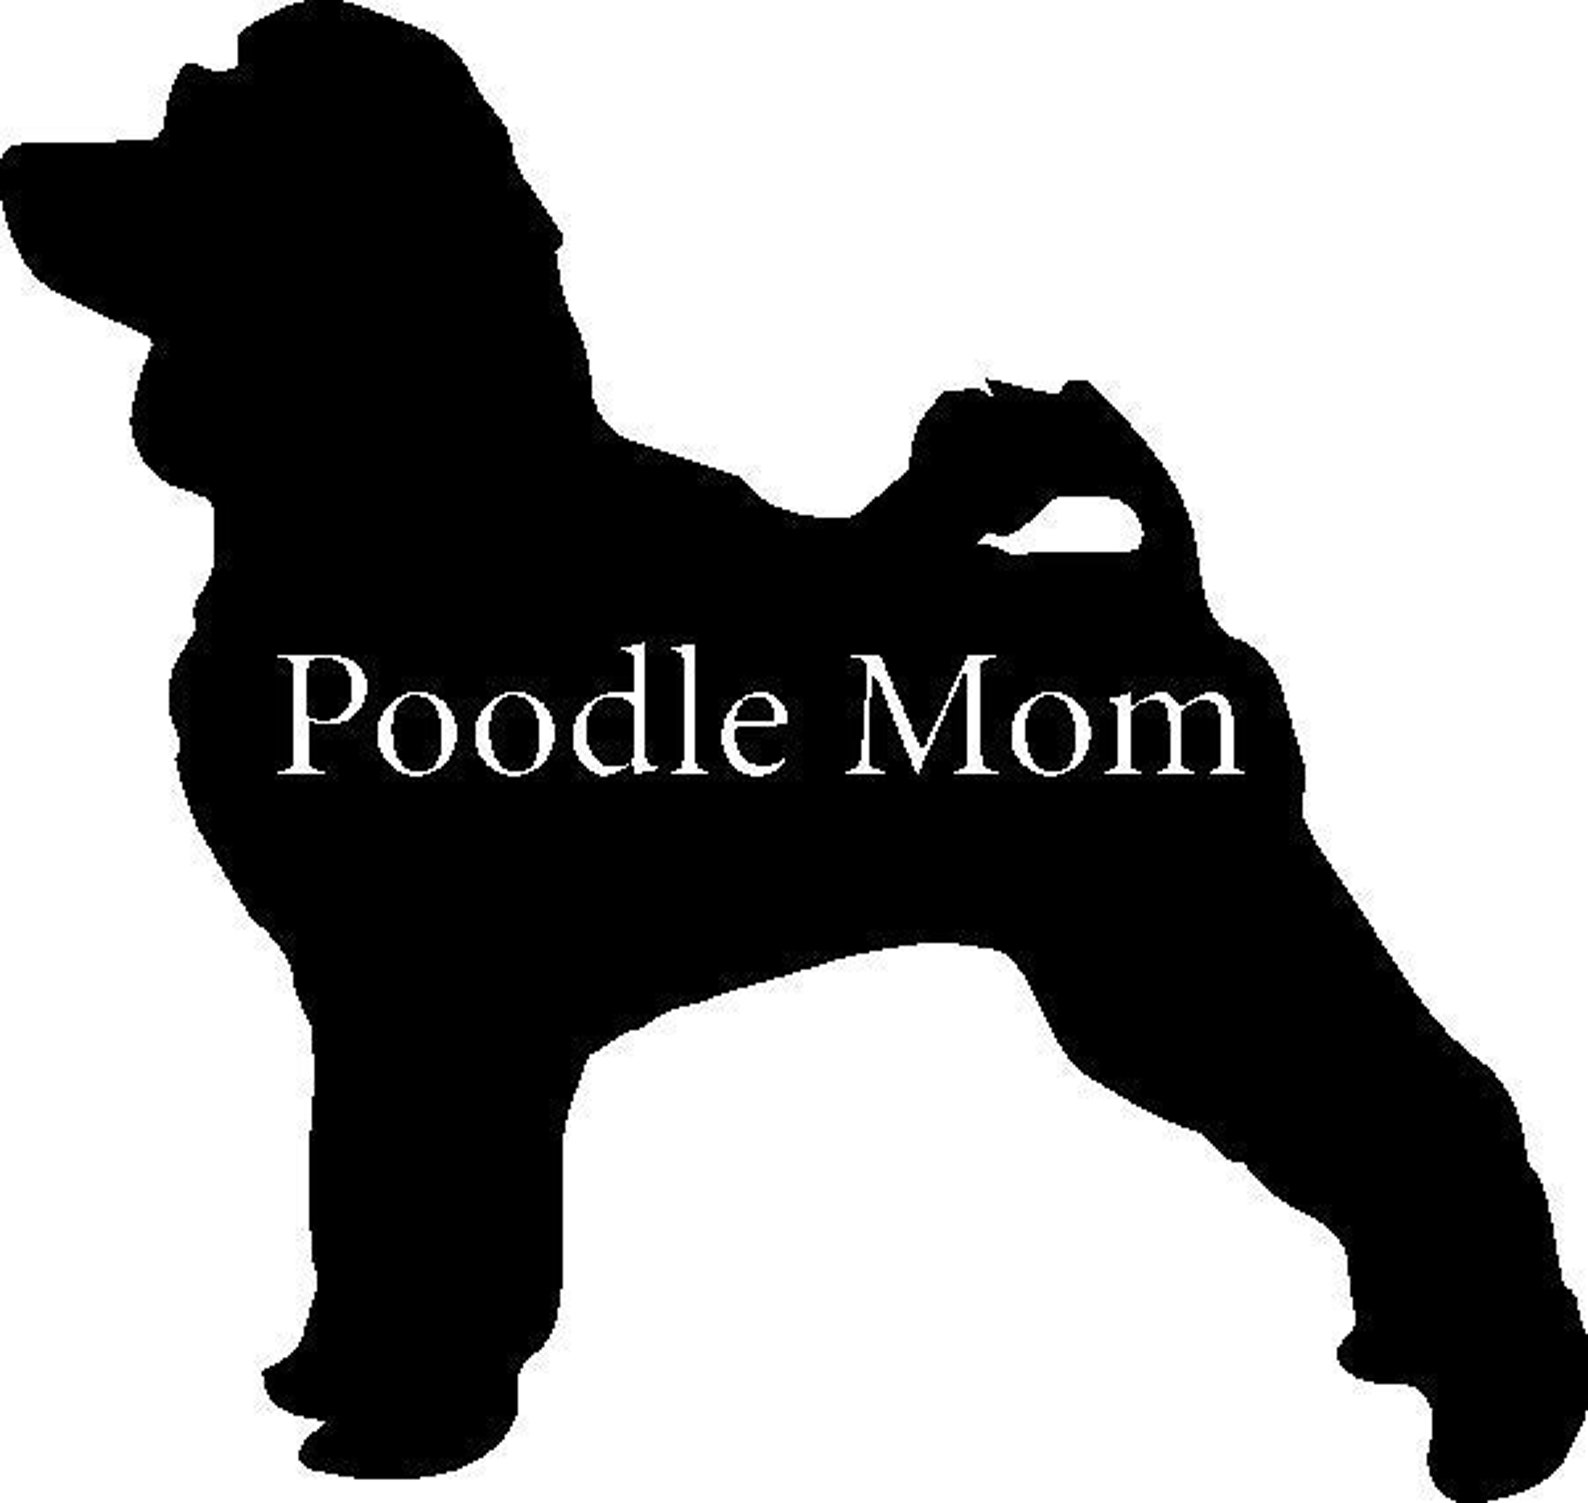 Poodle Mom SVG Standard Poodle Miniature Toy Dxf Jpg | Etsy